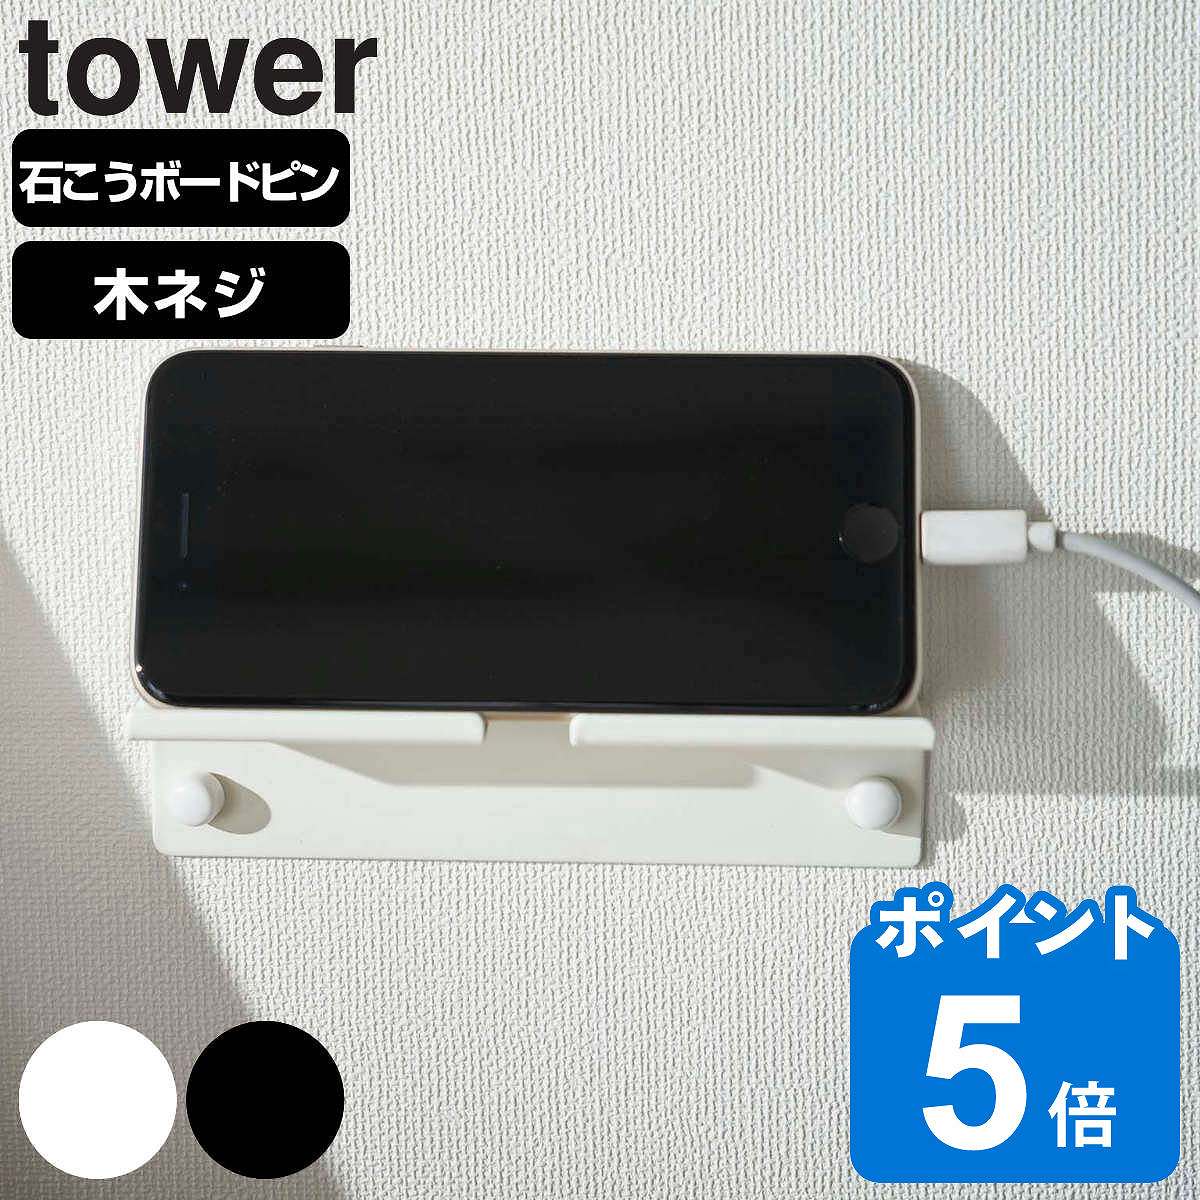 山崎実業 tower ウォール スマートフォンホルダー タワー